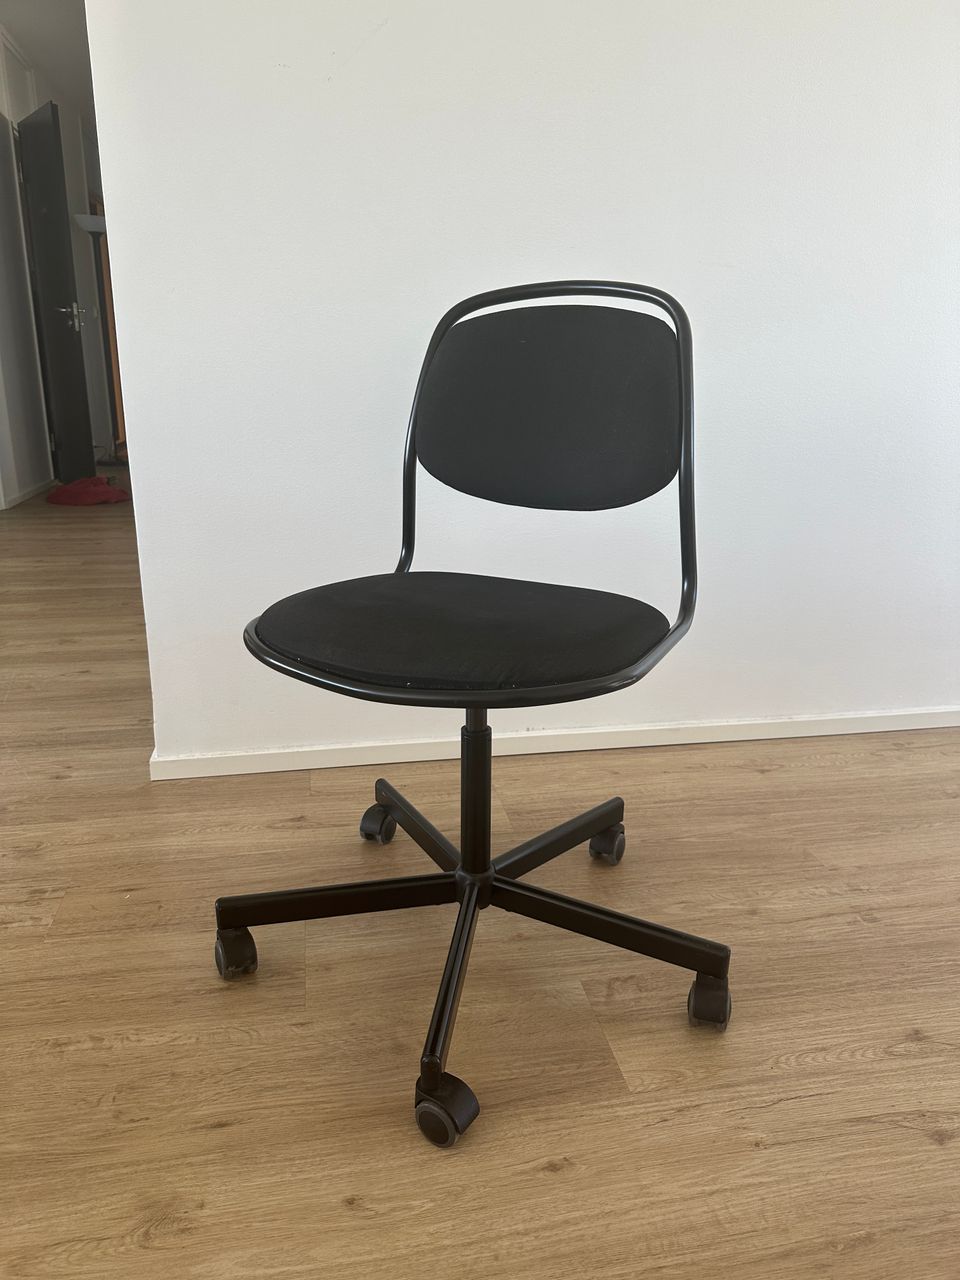 IKEA musta toimistotuoli - office chair